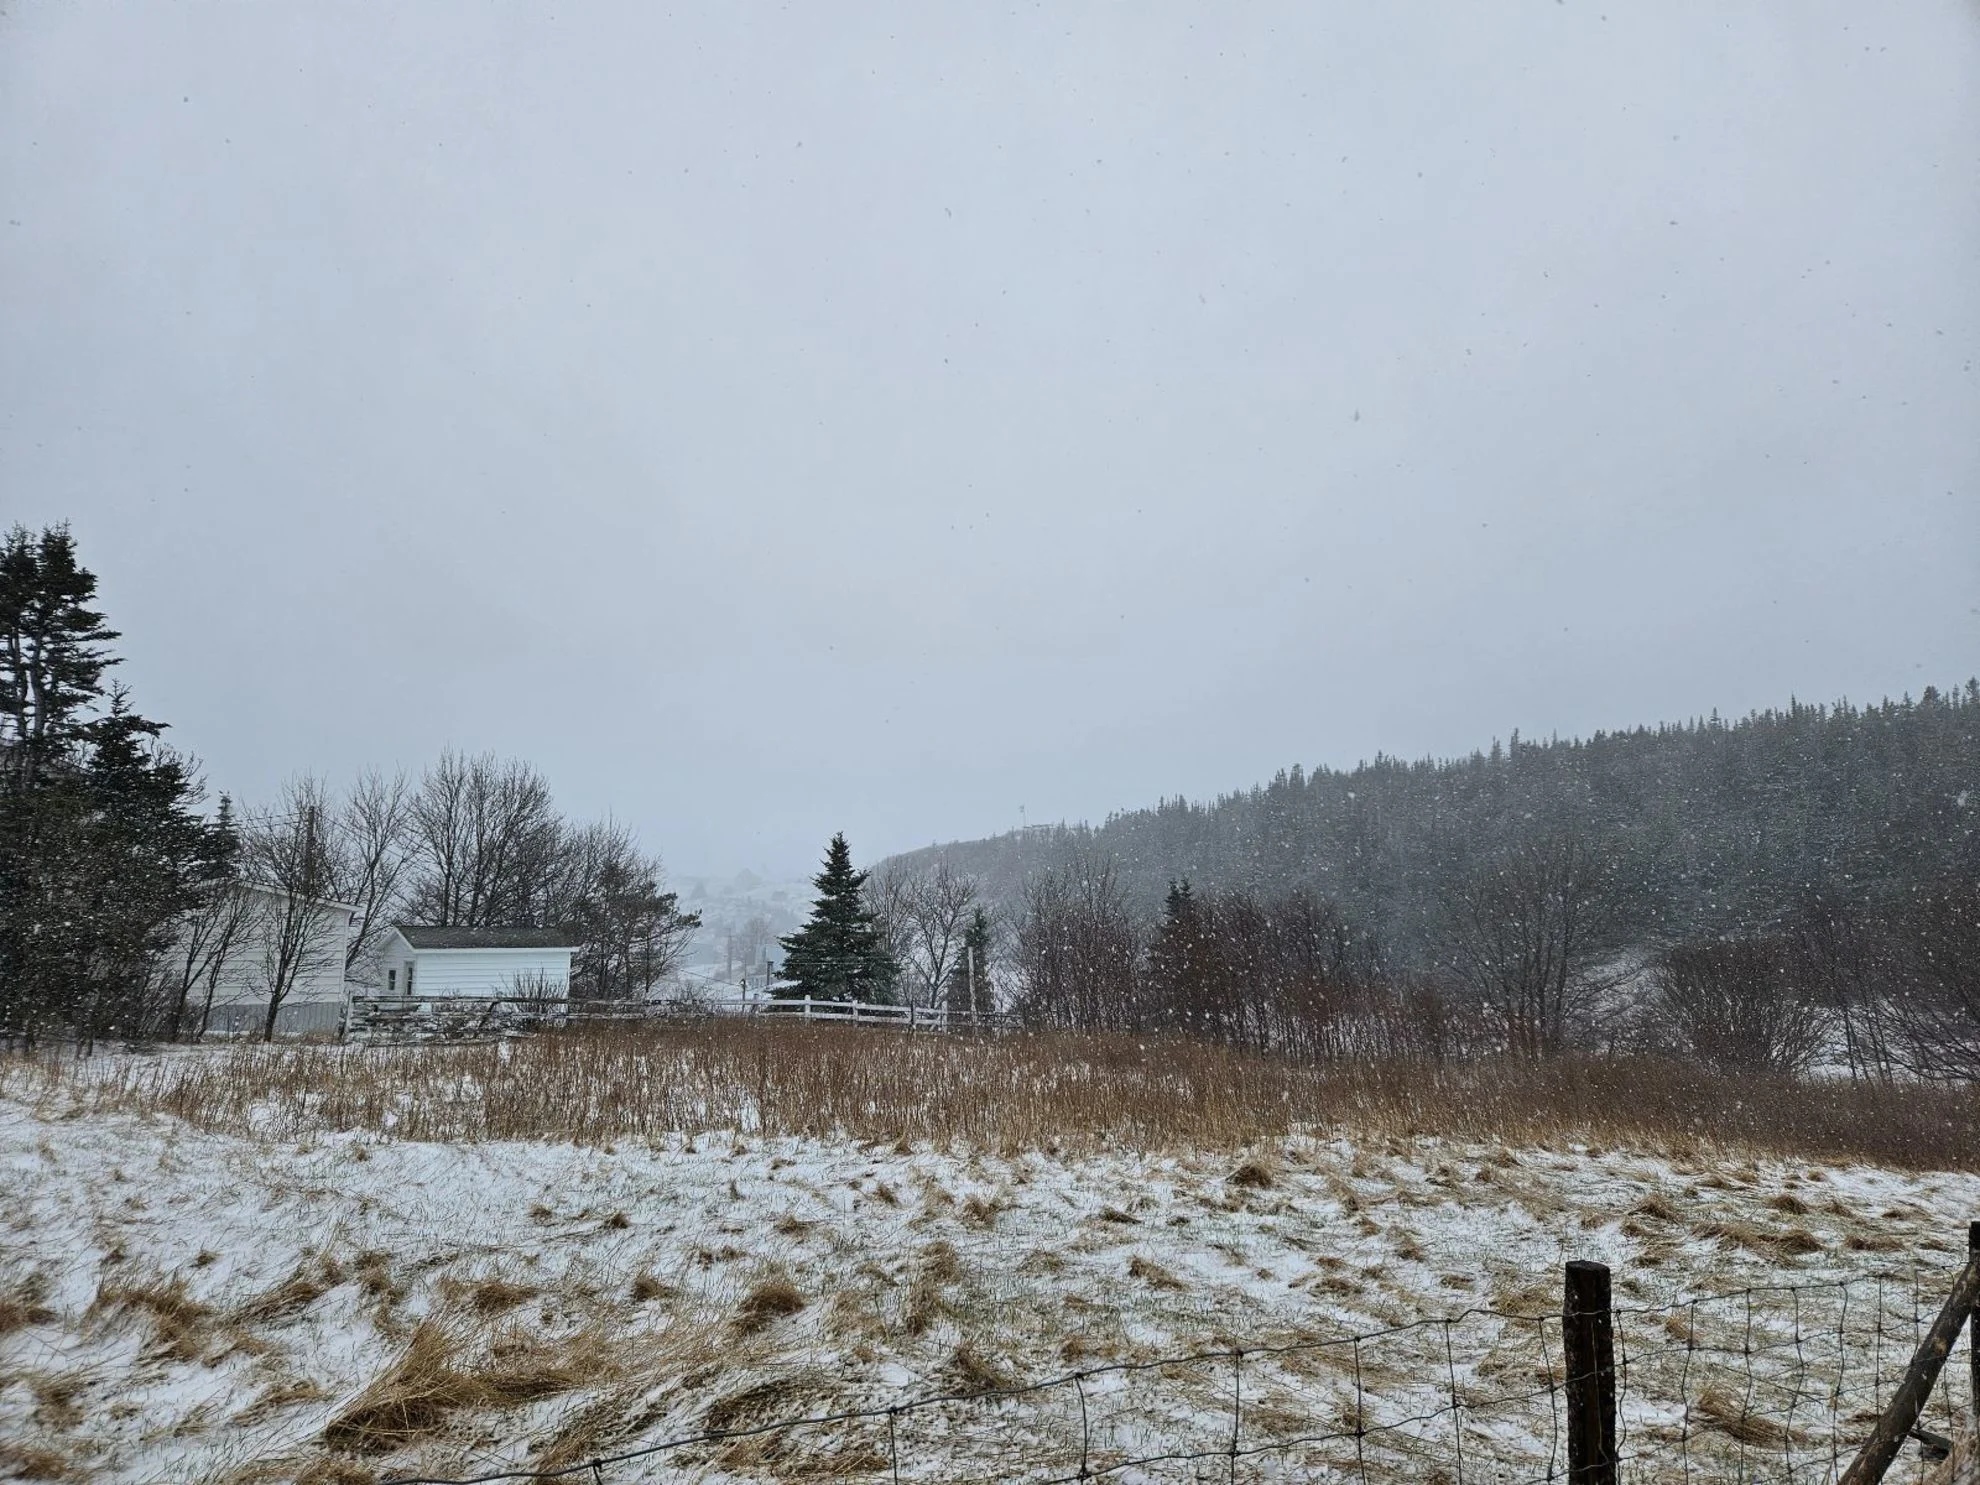 Brief, but intense winter weather wallops Newfoundland Thursday